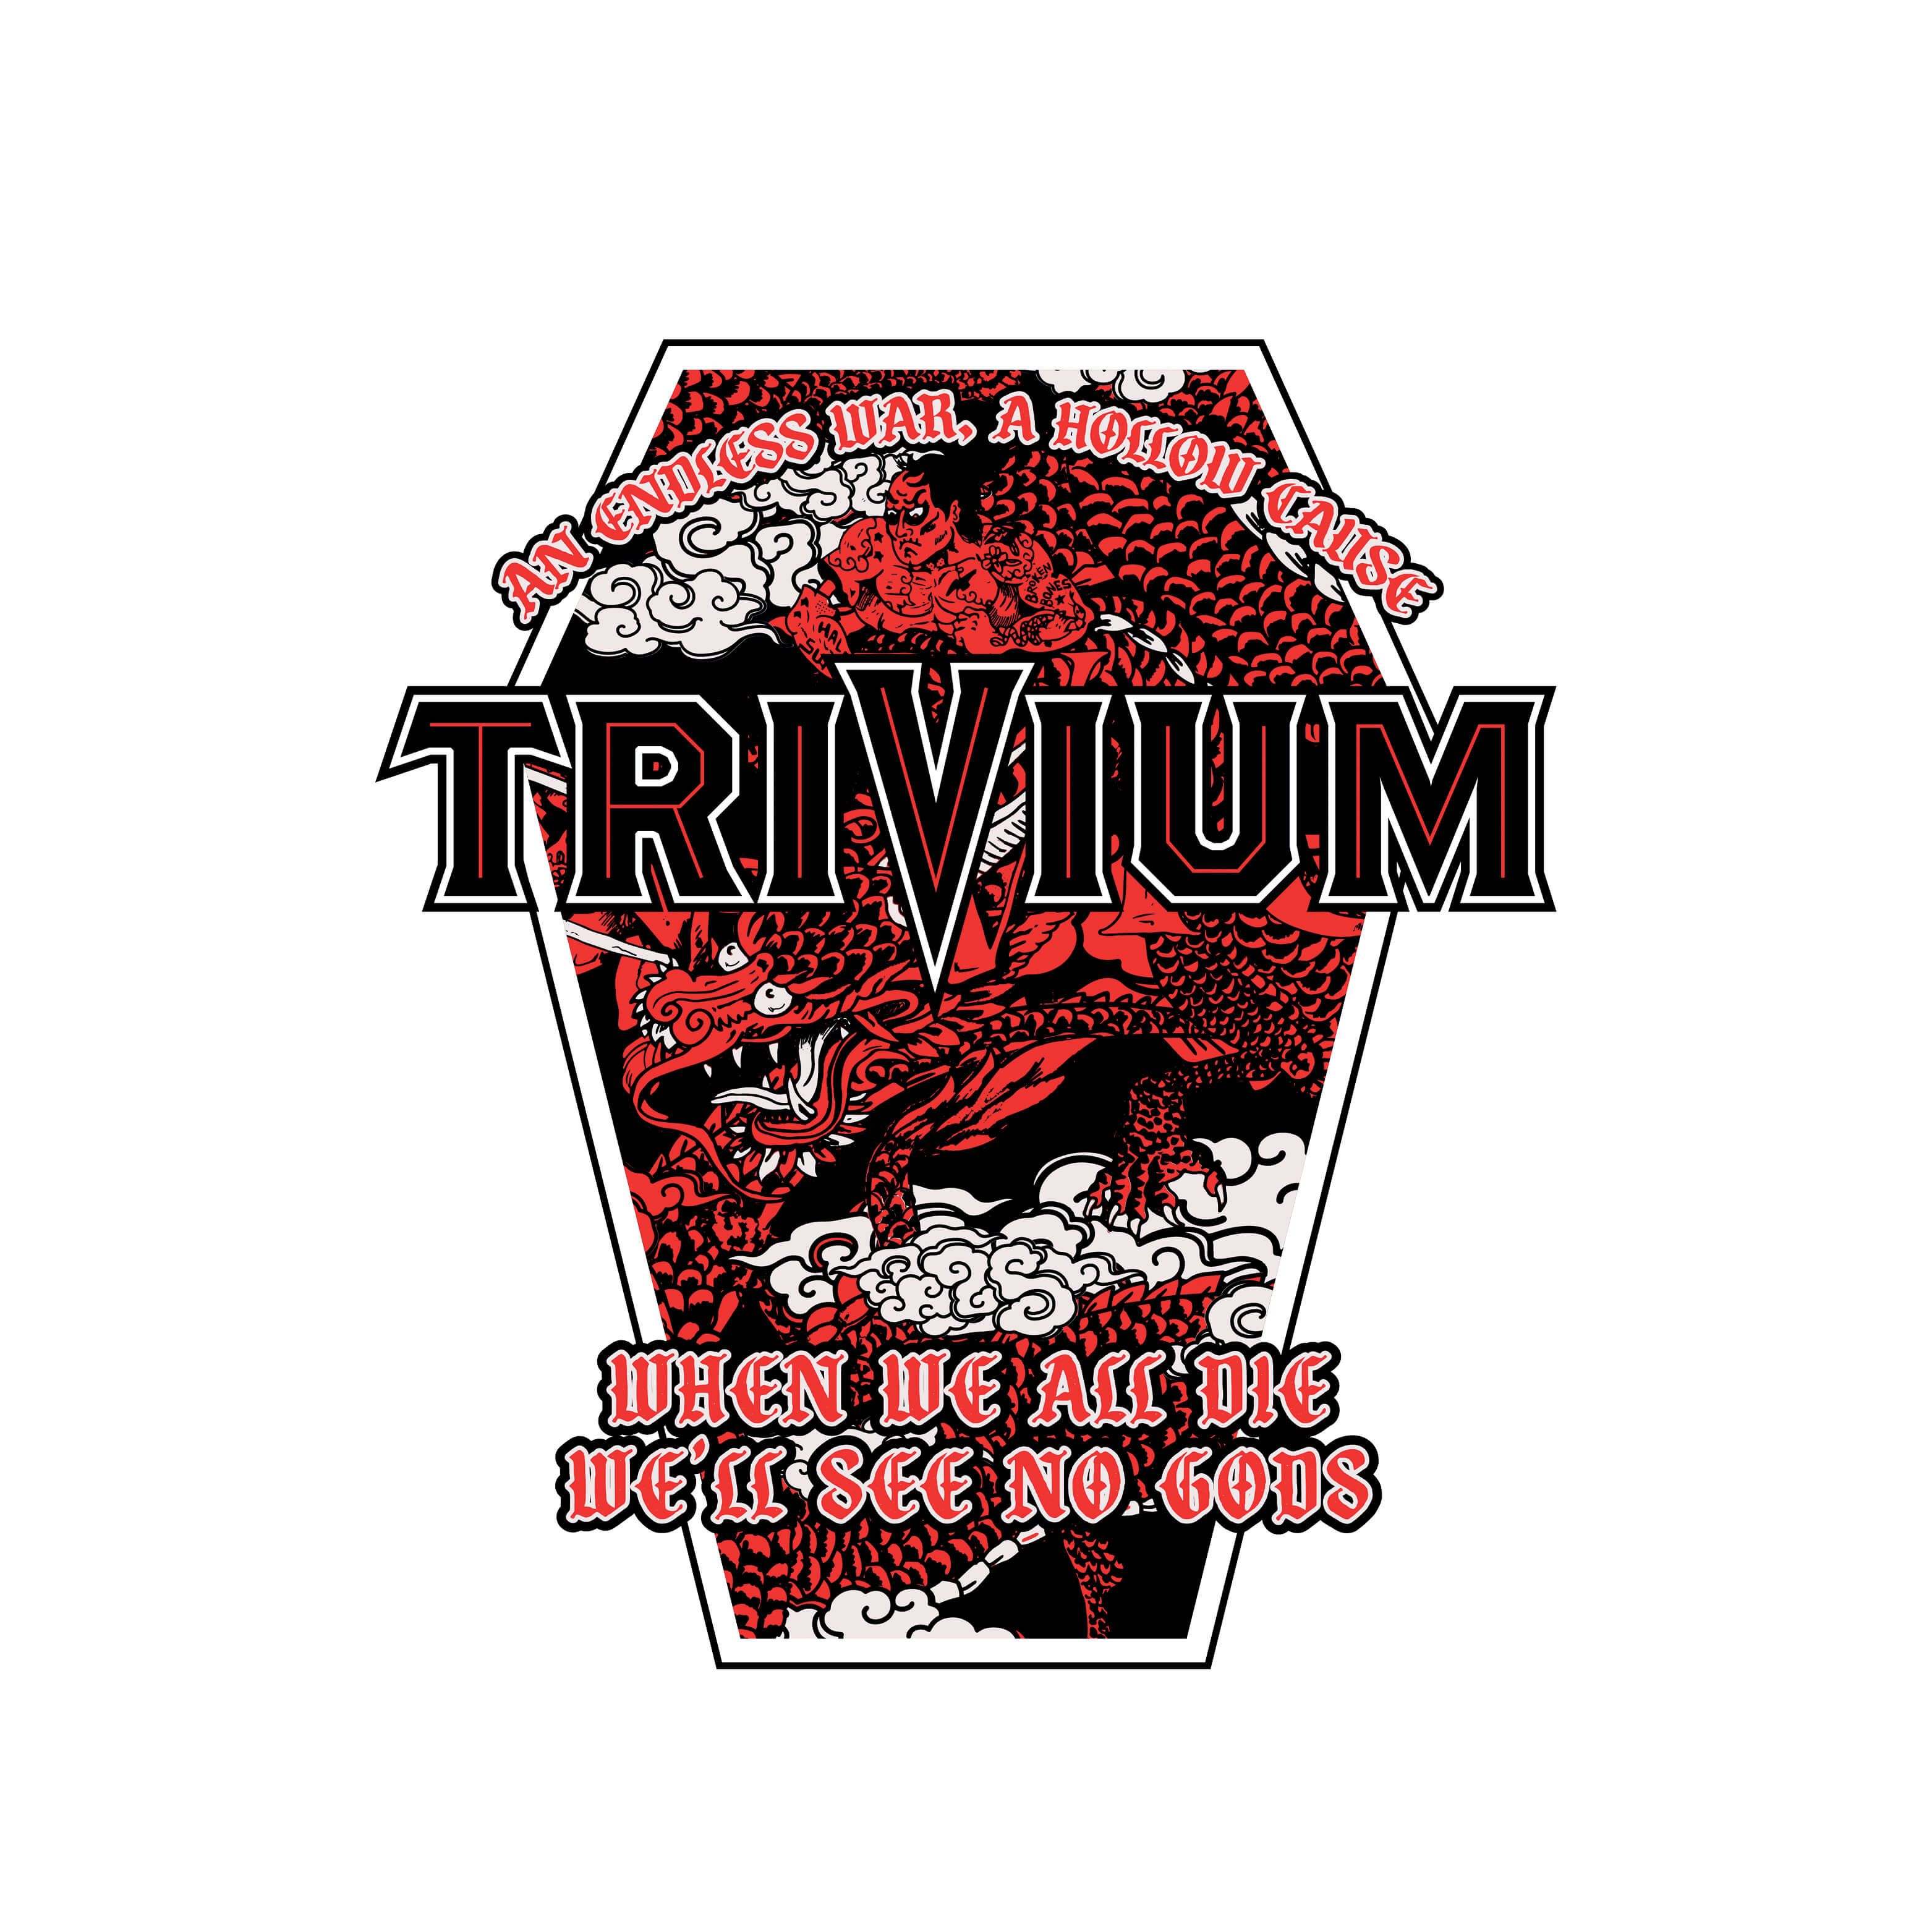 Trivium - When We All Die T-Shirt